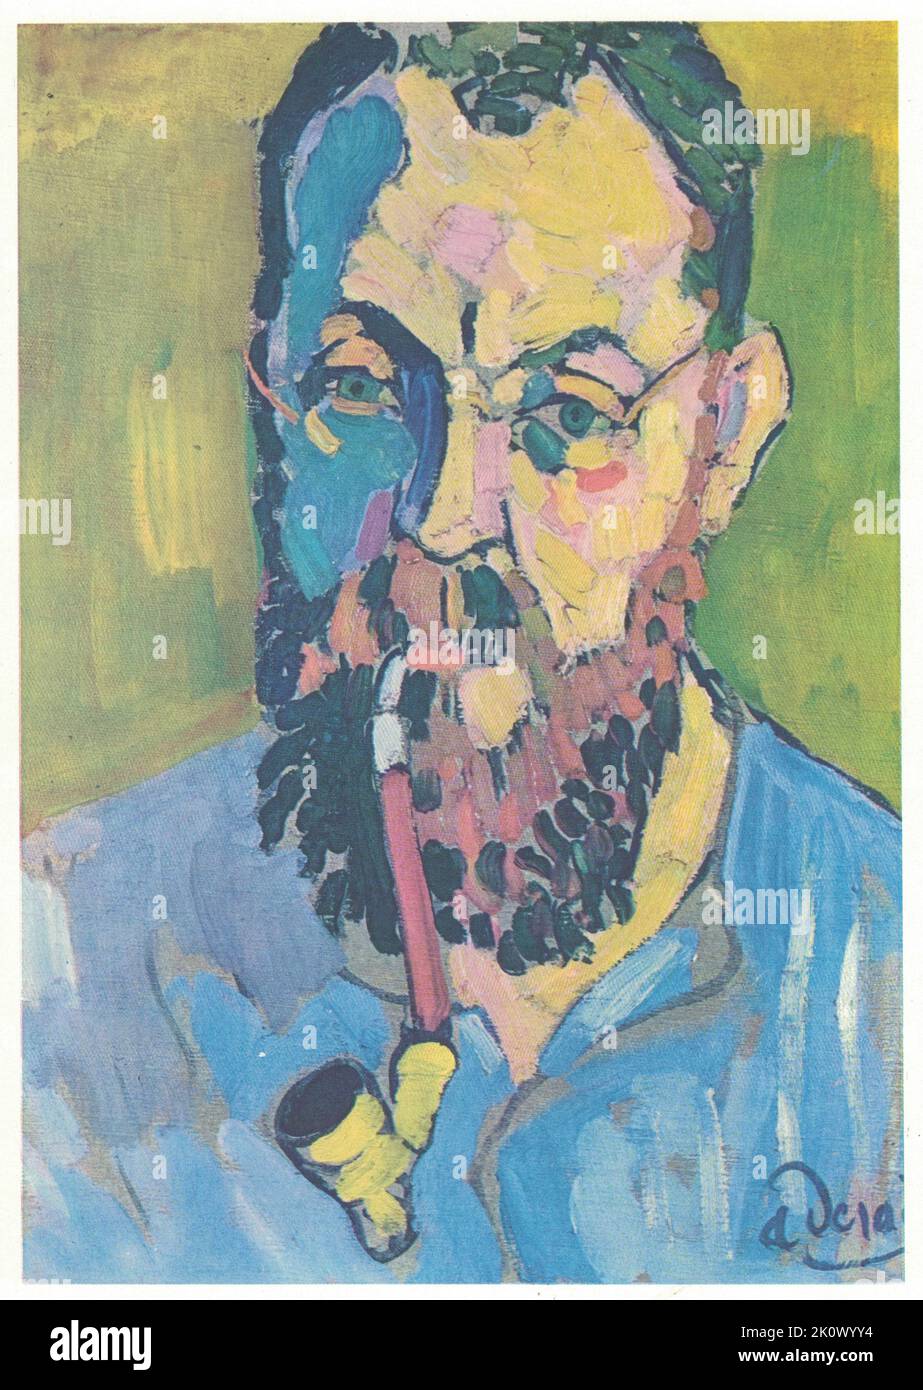 Portrait de Matisse, 1905. Peinture par André Derain, huile, toile. André Derain est surtout connu pour ses contributions aux développements du Fauvism et du Cubisme, deux mouvements d'avant-garde depuis le début du siècle 20th. Derain est né sur 17 juin 1880 à Chatou, juste à l'extérieur de Paris. Il commence sa formation en assistant à des cours de peinture sous la direction du symboliste français Eugène carrière à l'Académie carrière (1898-1899). Pendant son séjour à l'école, il frise Henri Matisse, et en 1900, il rencontre Maurice de Vlaminck, avec qui il partage plus tard un studio. Les trois ont souvent peint ensemble, et ont été instrumentaux Banque D'Images